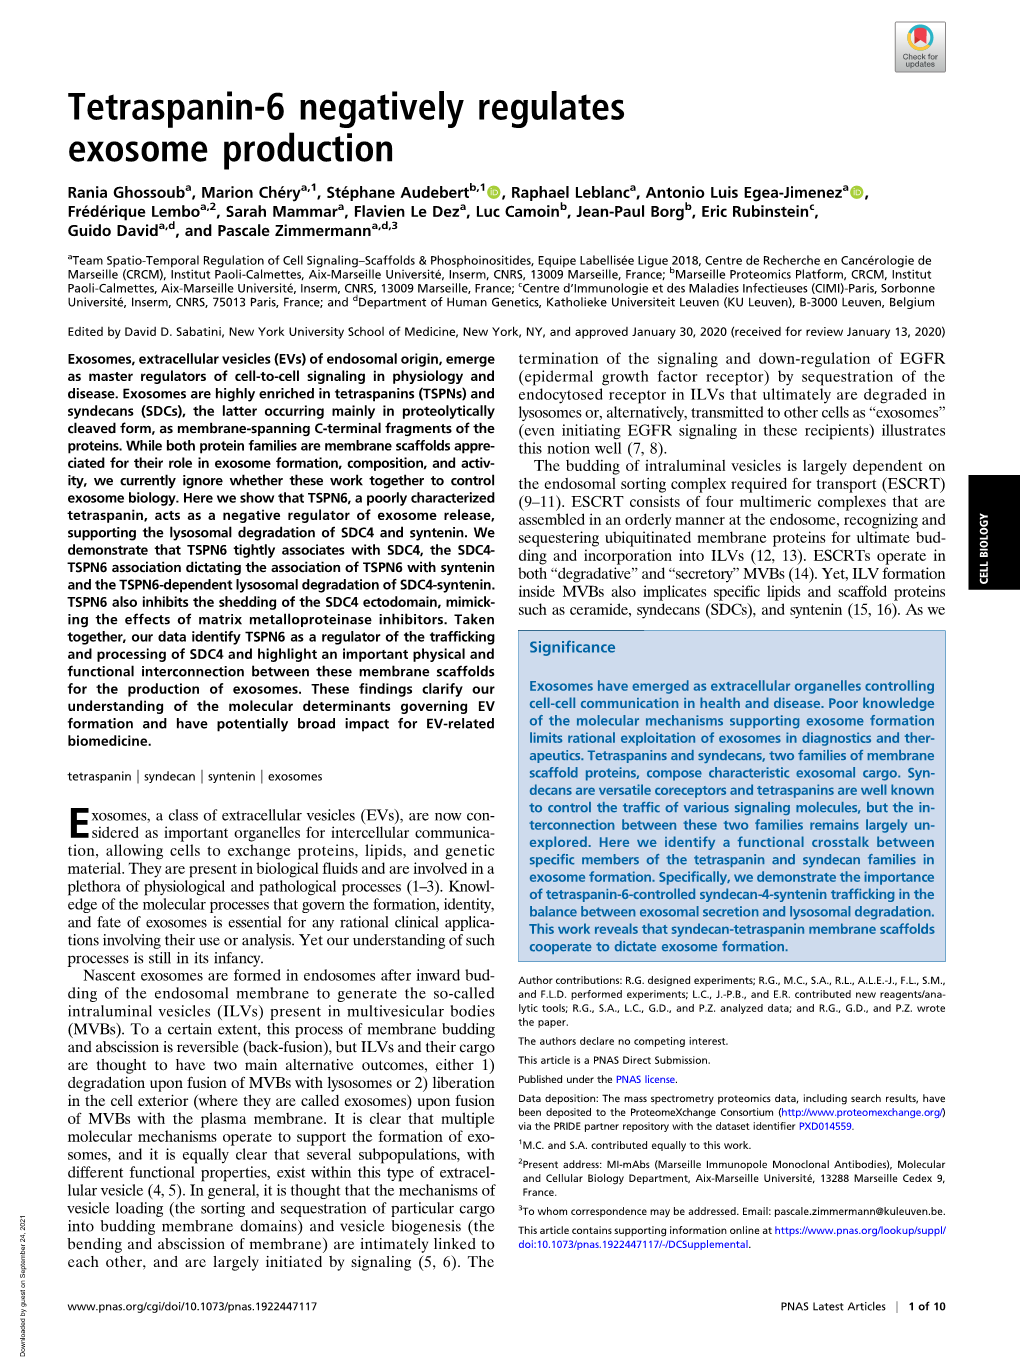 Tetraspanin-6 Negatively Regulates Exosome Production